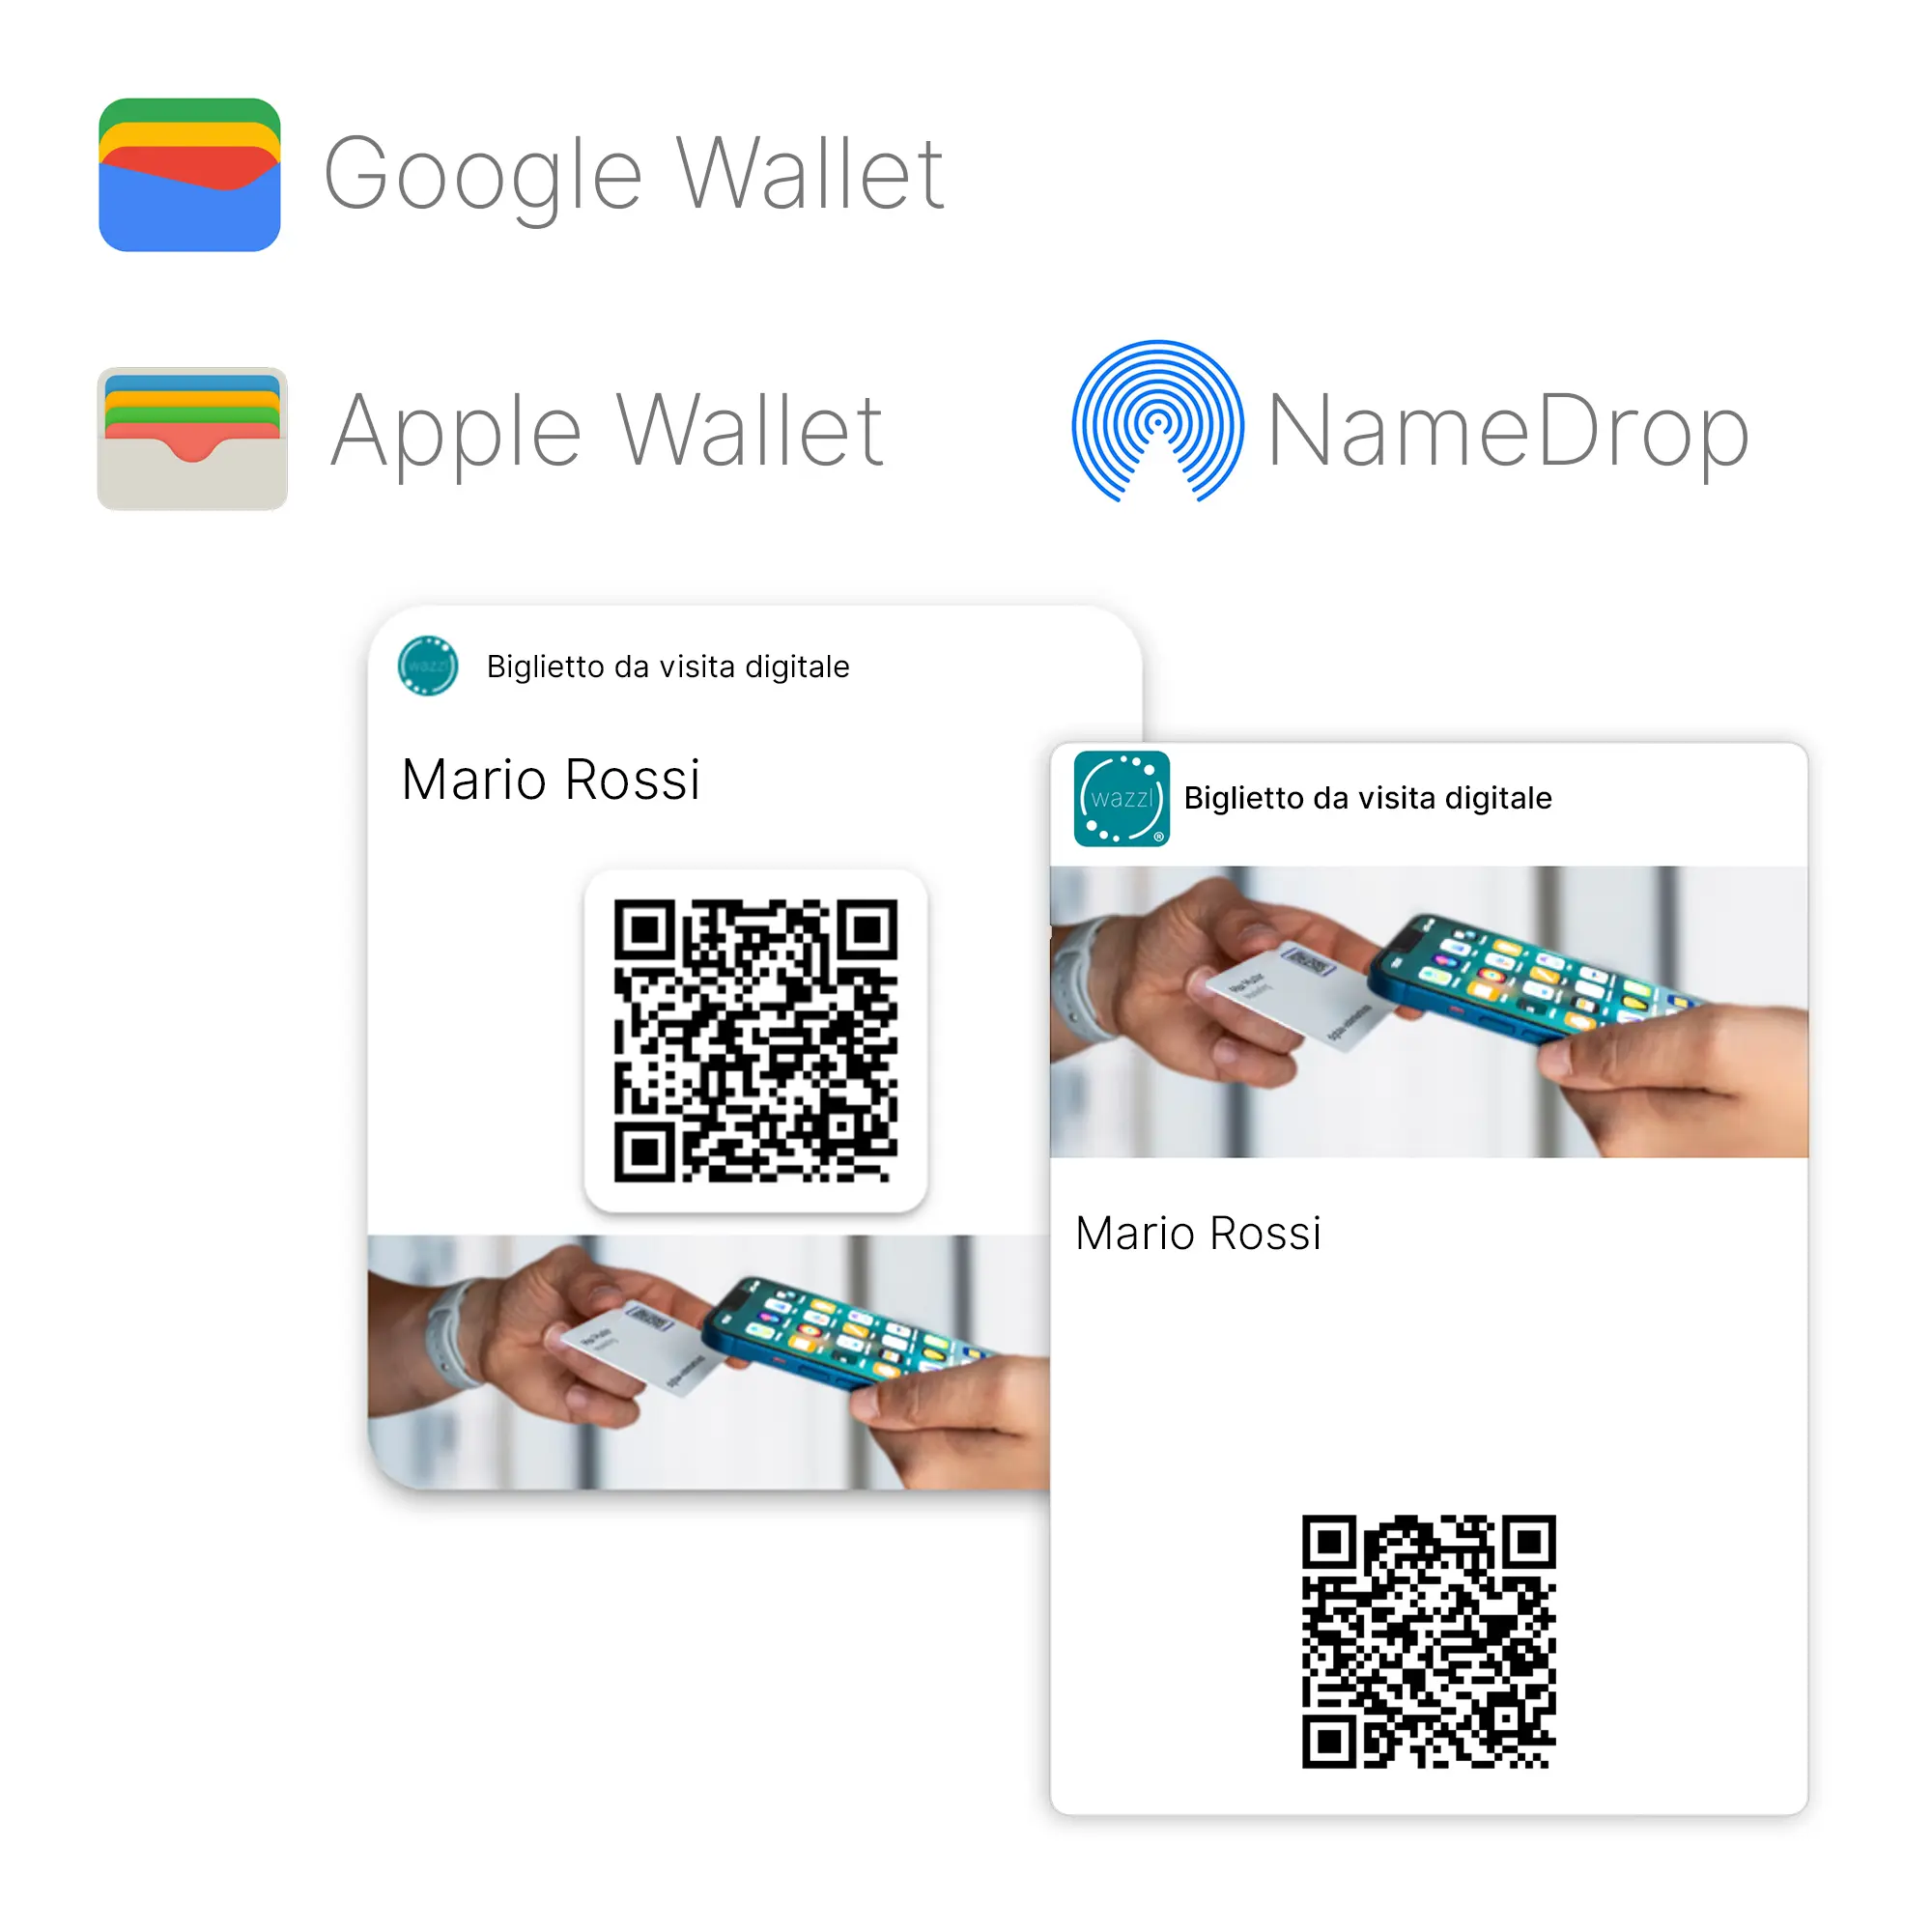 Set iniziale Smartcard (con codice QR) e wazzl NFC